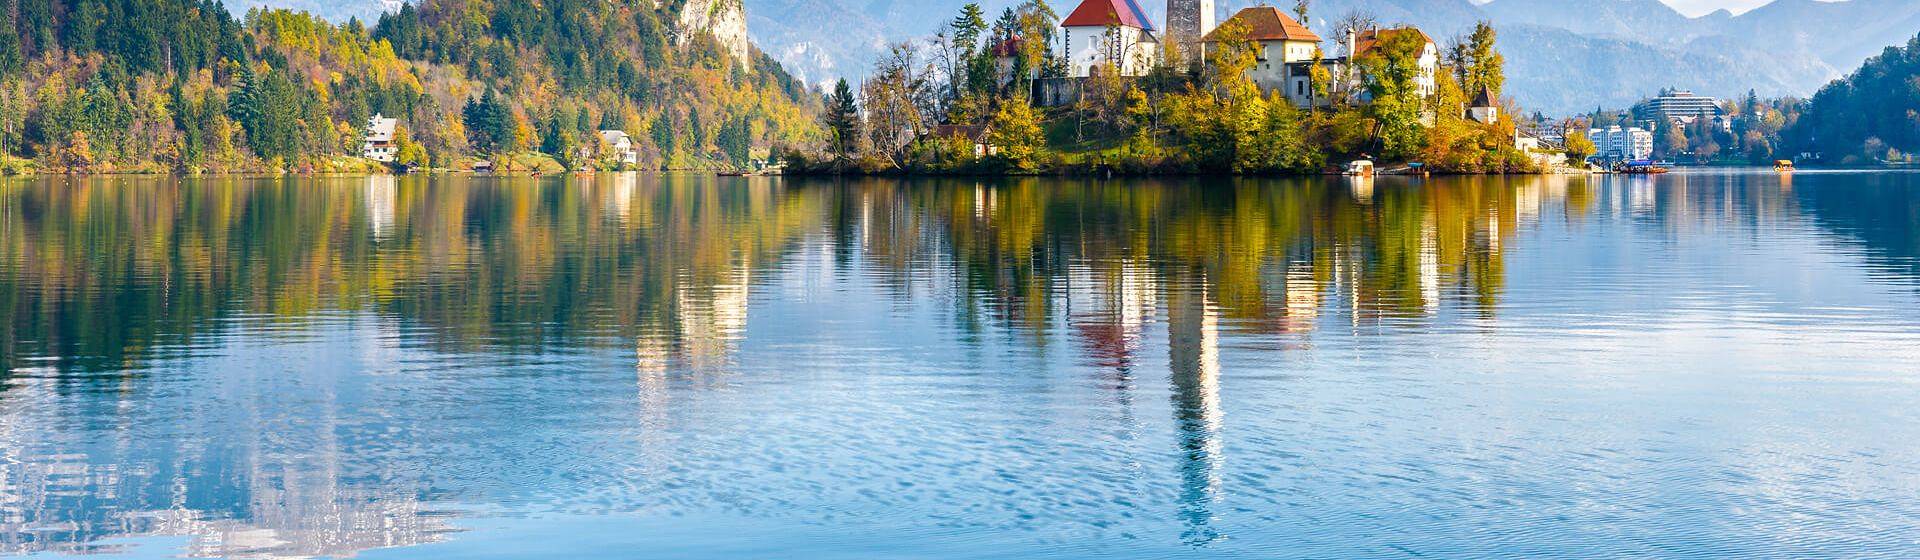 Holidays to Lake Bled Image